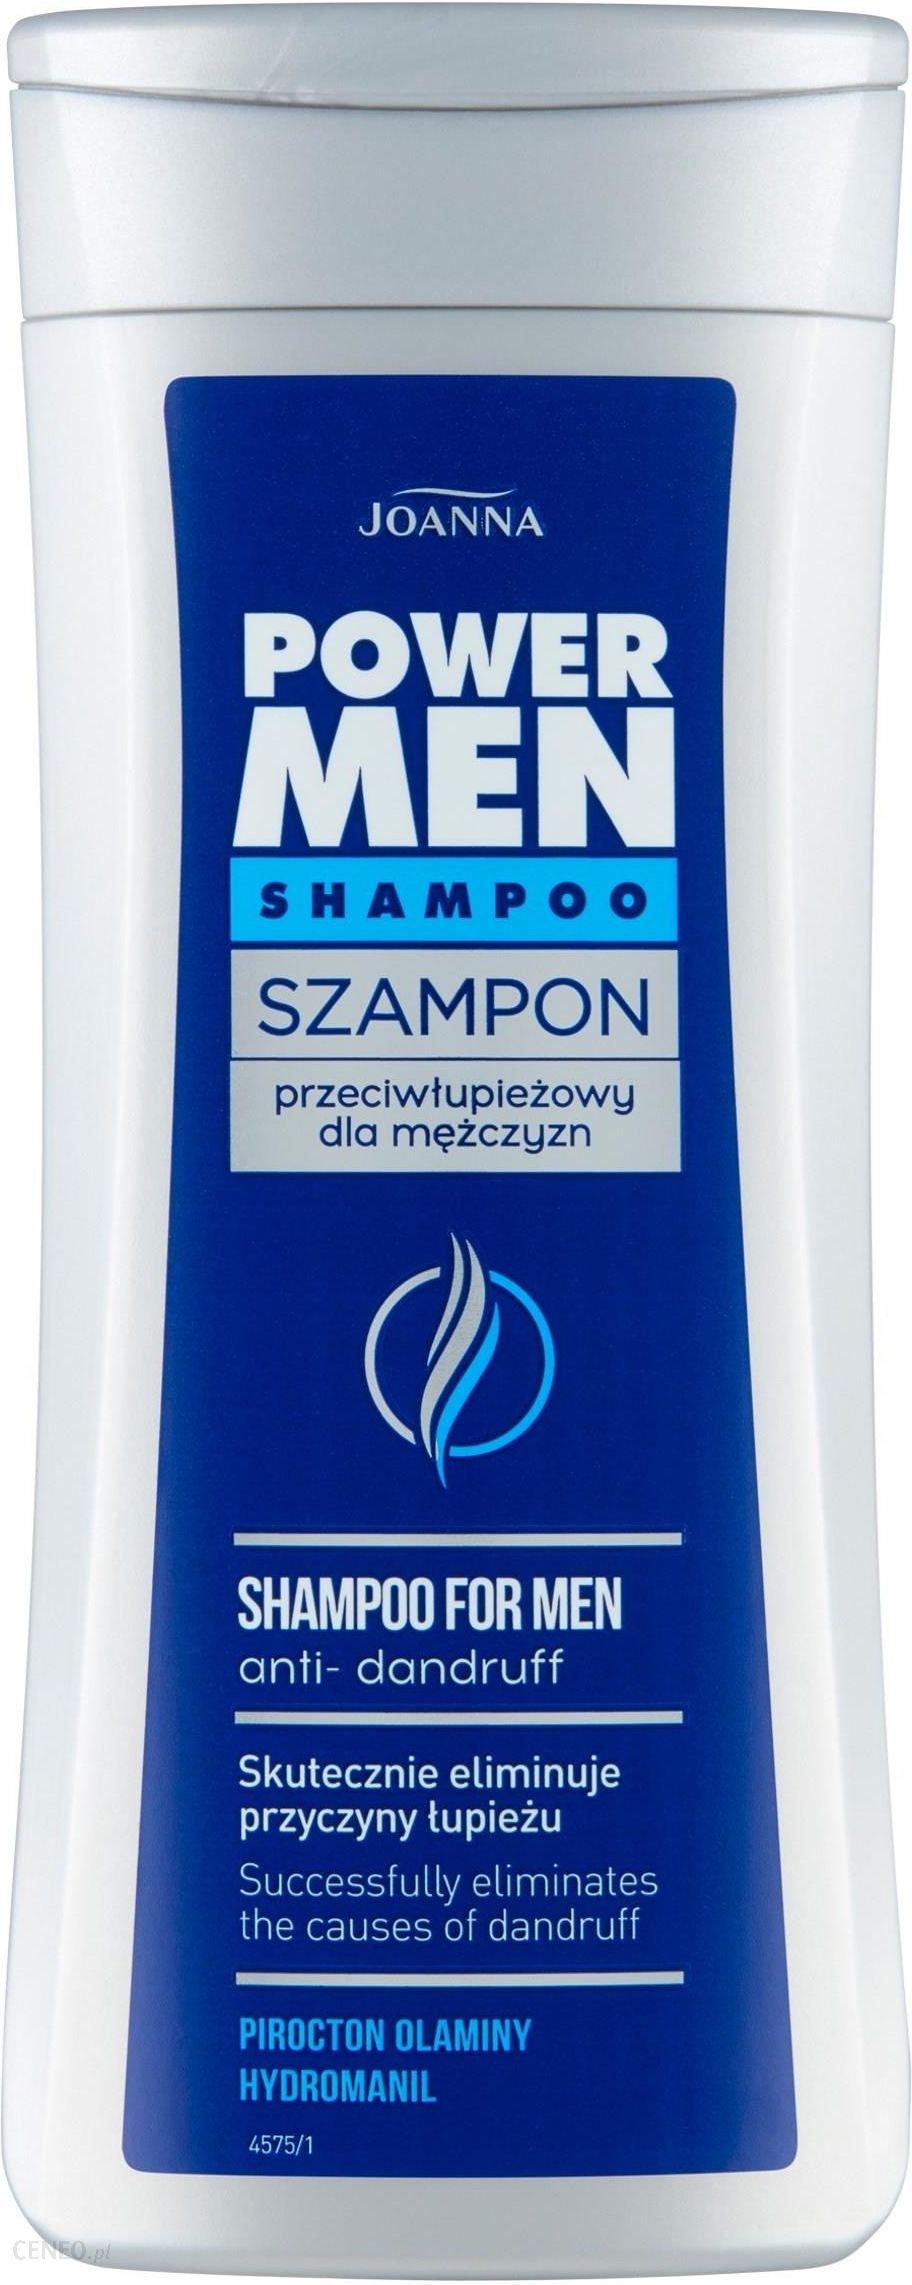 joanna szampon przeciw siwieniu